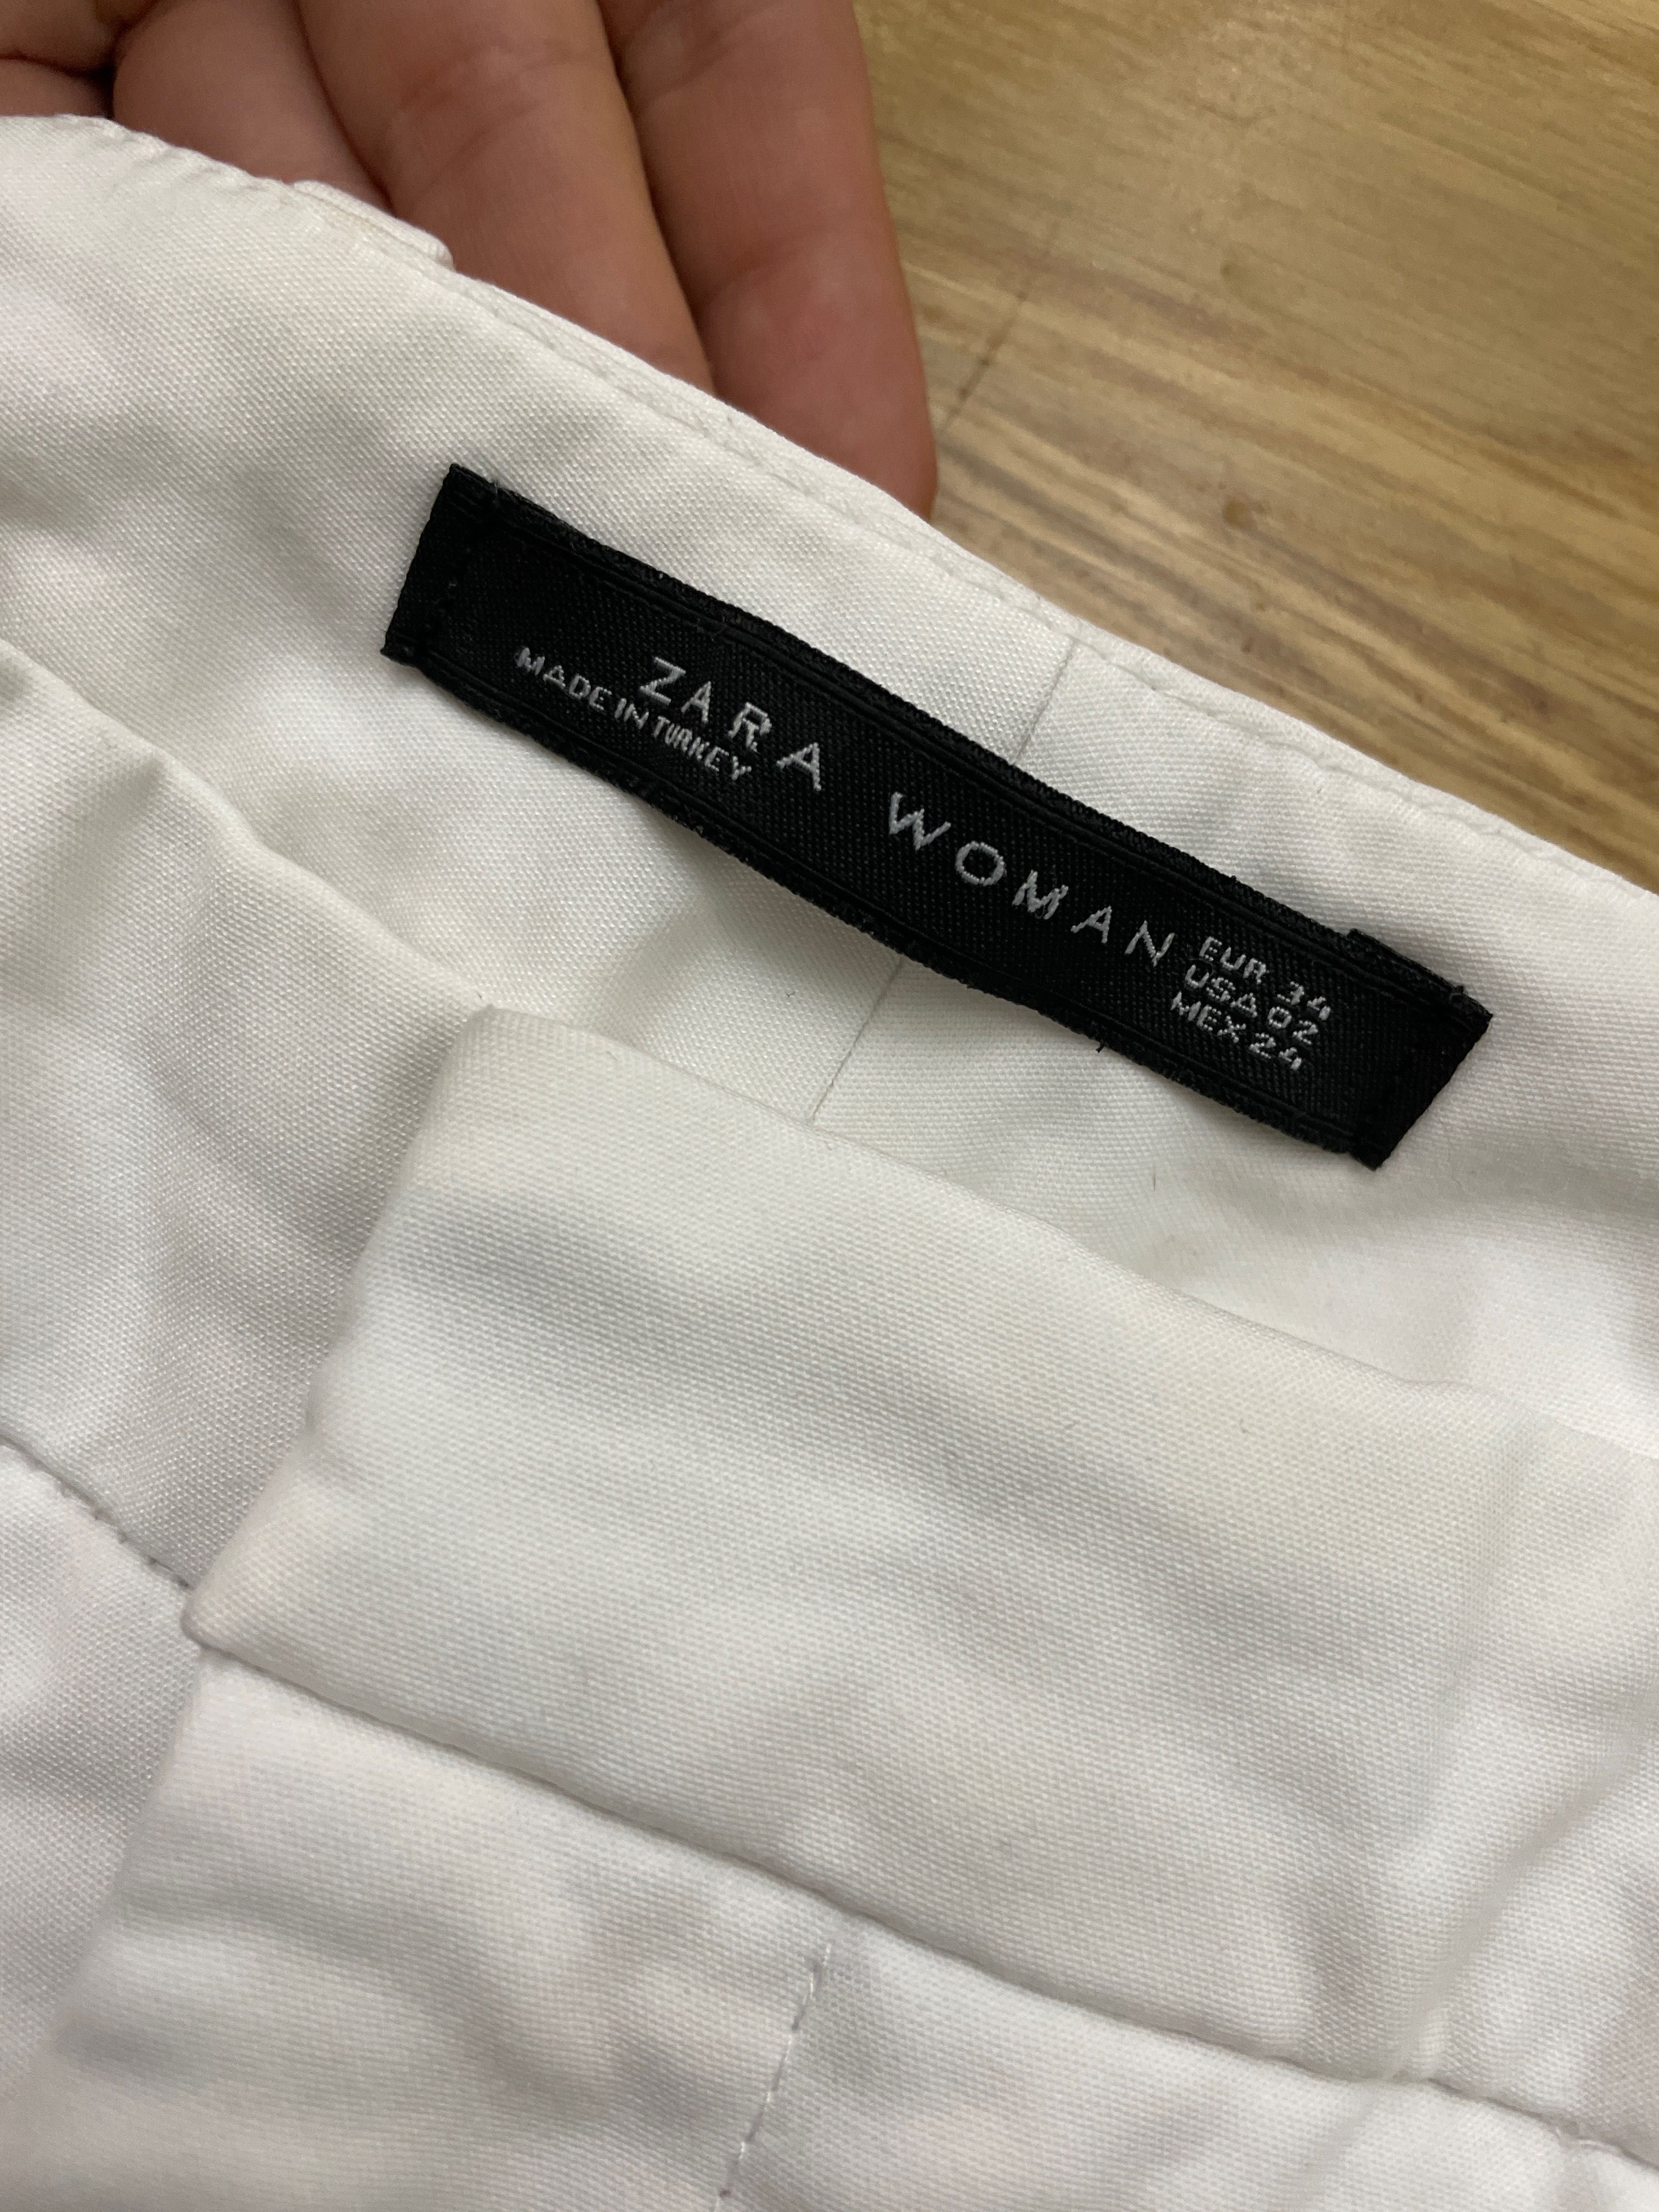 Брюки Zara белые, 34 размер